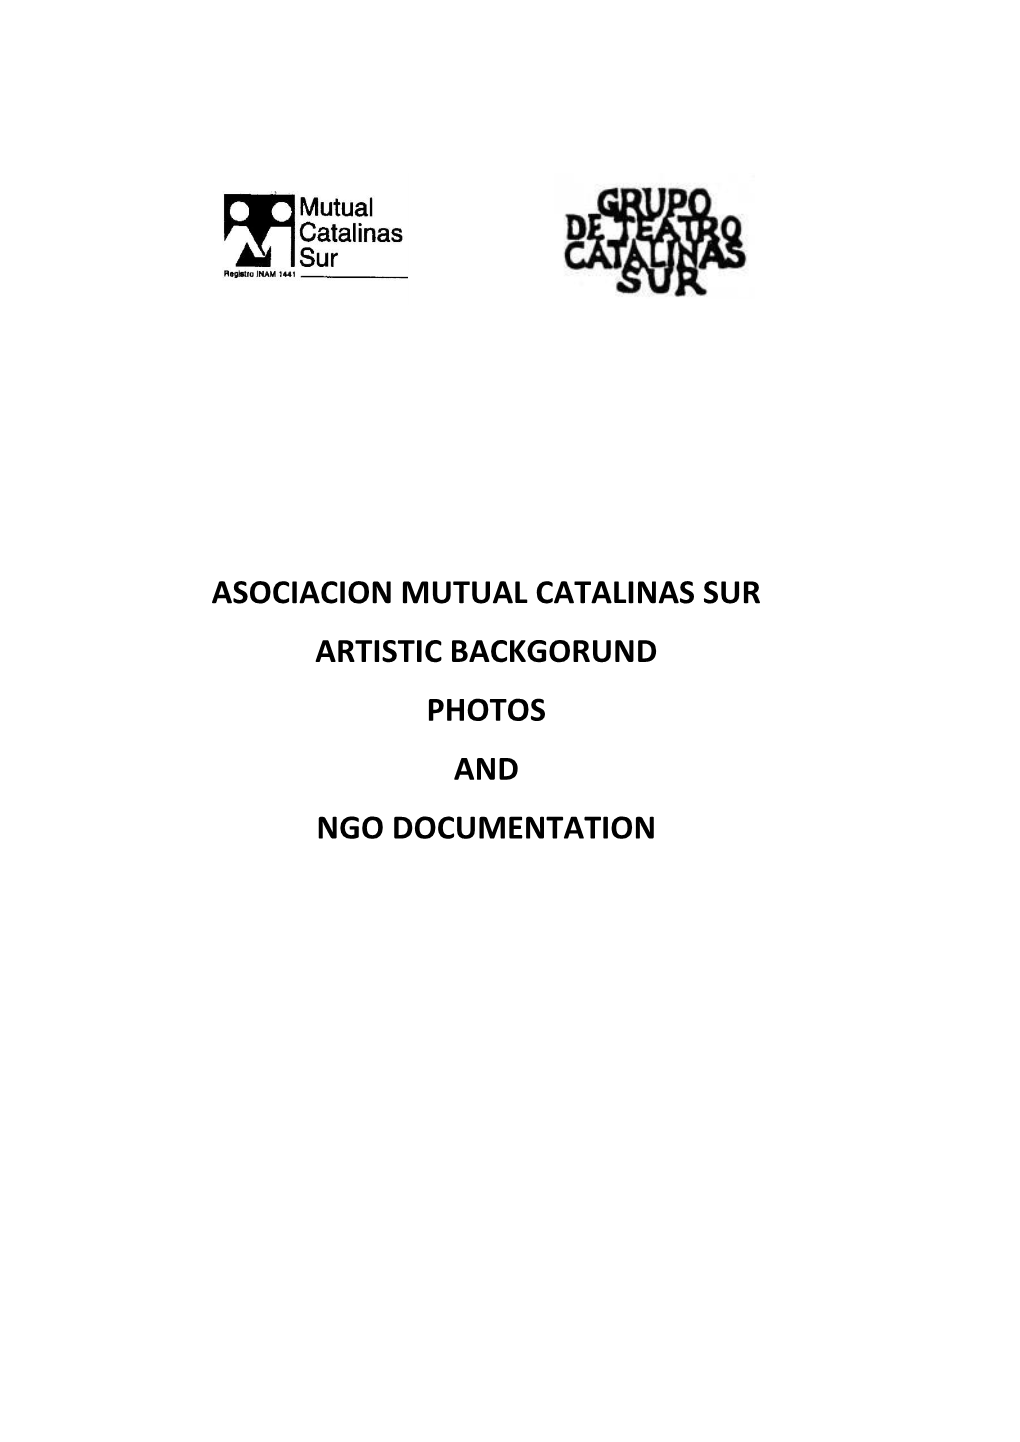 Asociacion Mutual Catalinas Sur Artistic Backgorund Photos and Ngo Documentation